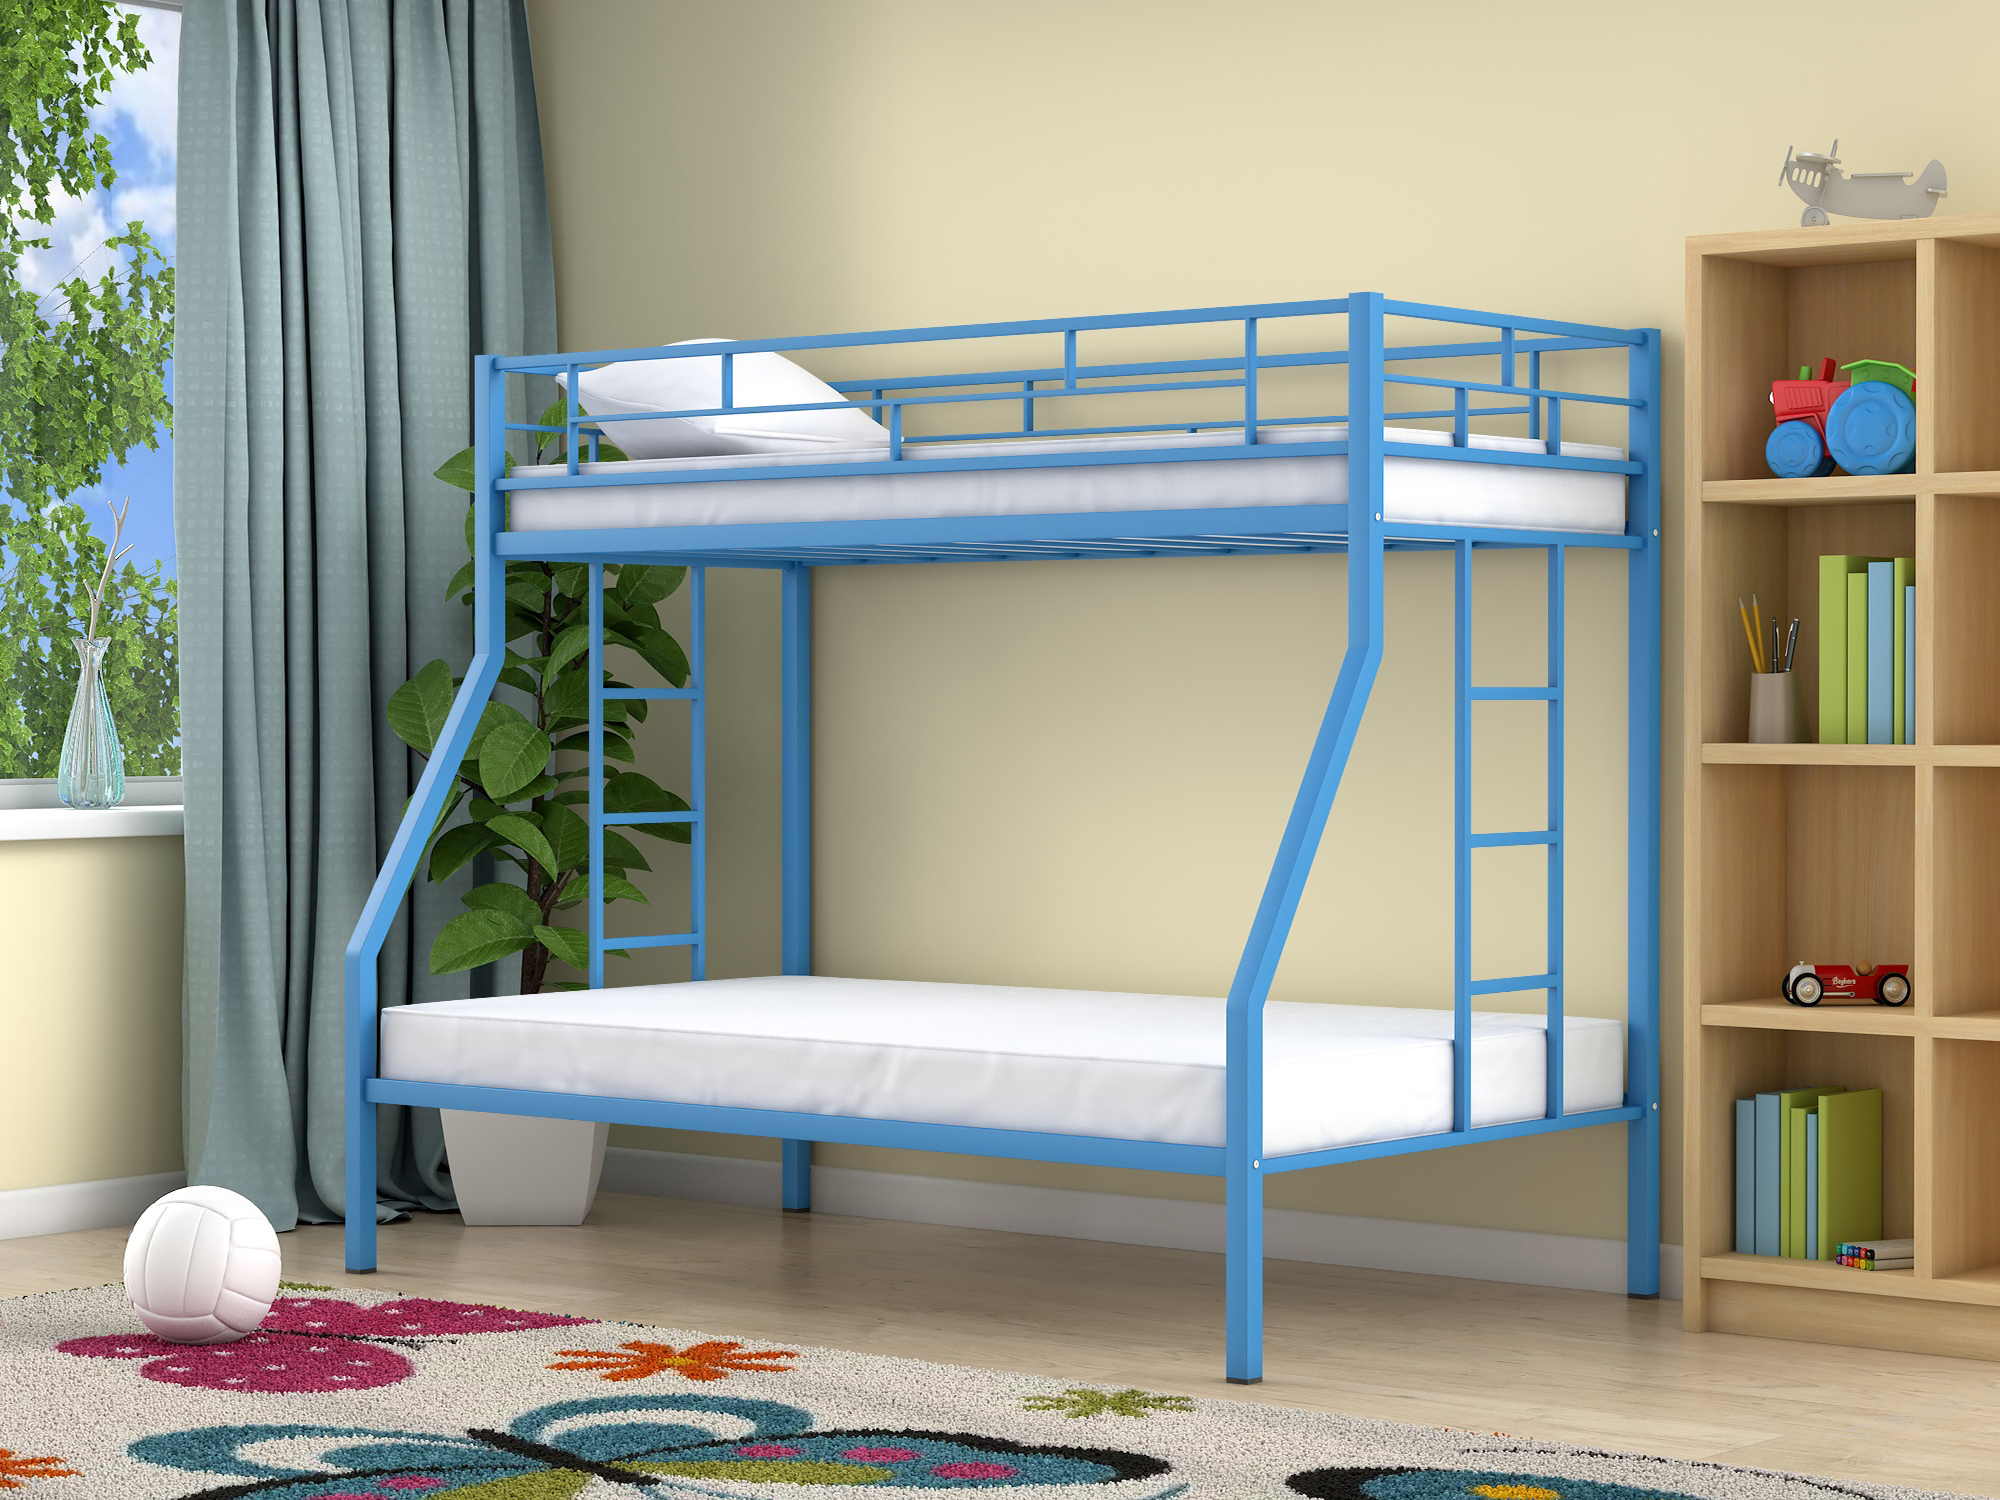 Двухъярусная кровать Милан (90х190/120х190) , Голубой, Металл двухъярусная кровать милан 90х190 120х190 голубой оранжевый лдсп металл